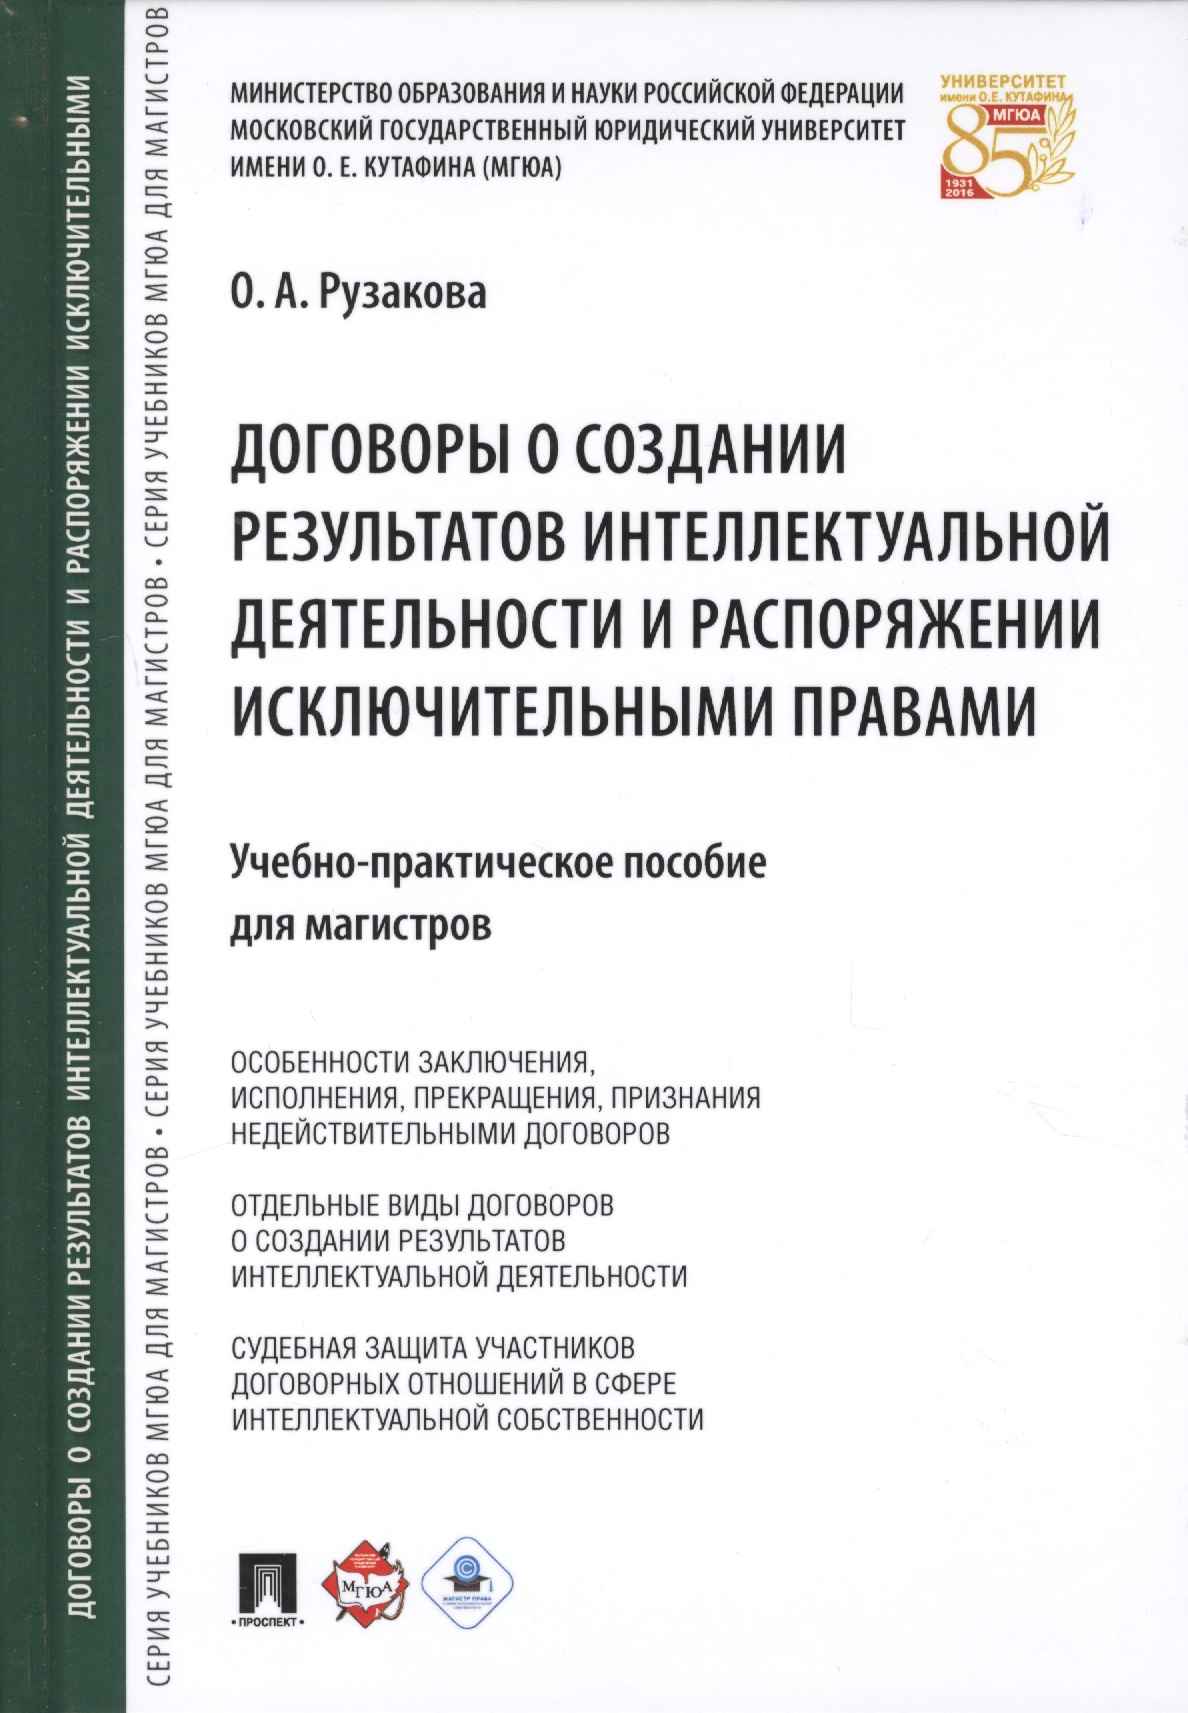 Договоры о создании результатов интеллектуальной деятельности… (МГЮАДМаг) Рузакова